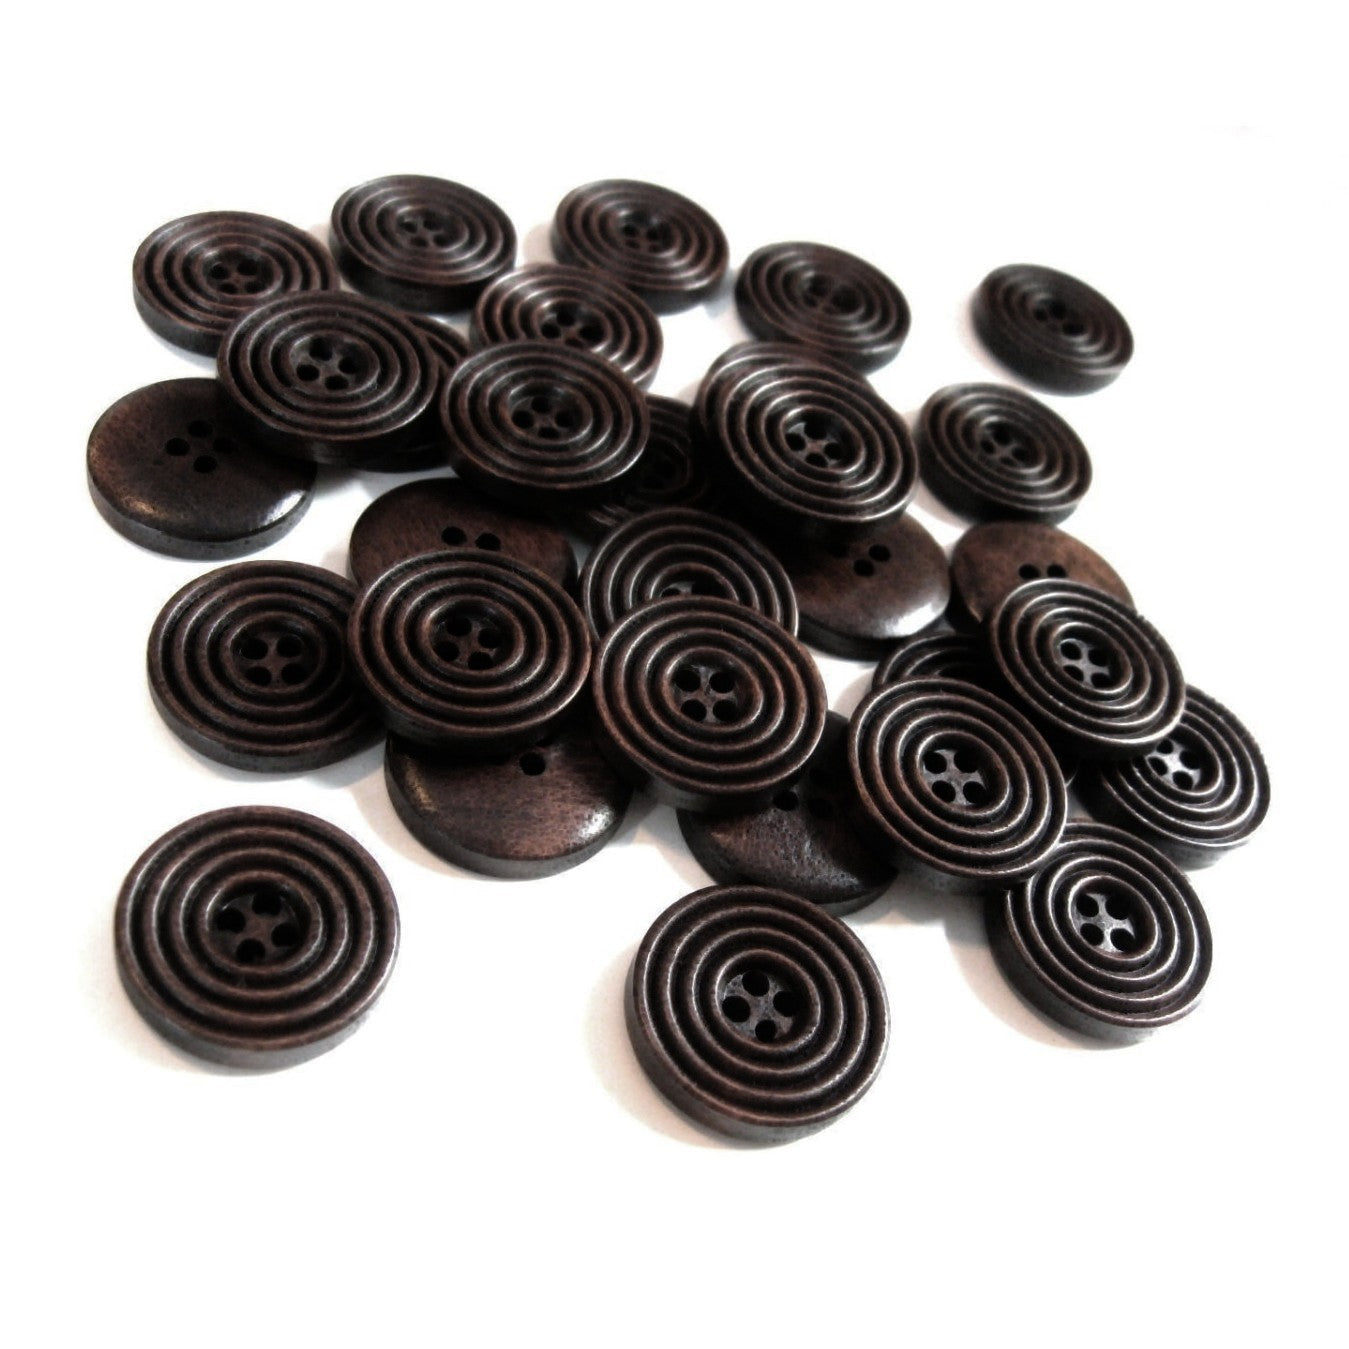 Bouton de bois café foncé de 2cm - ensemble de 8 boutons en bois naturel avec cercles